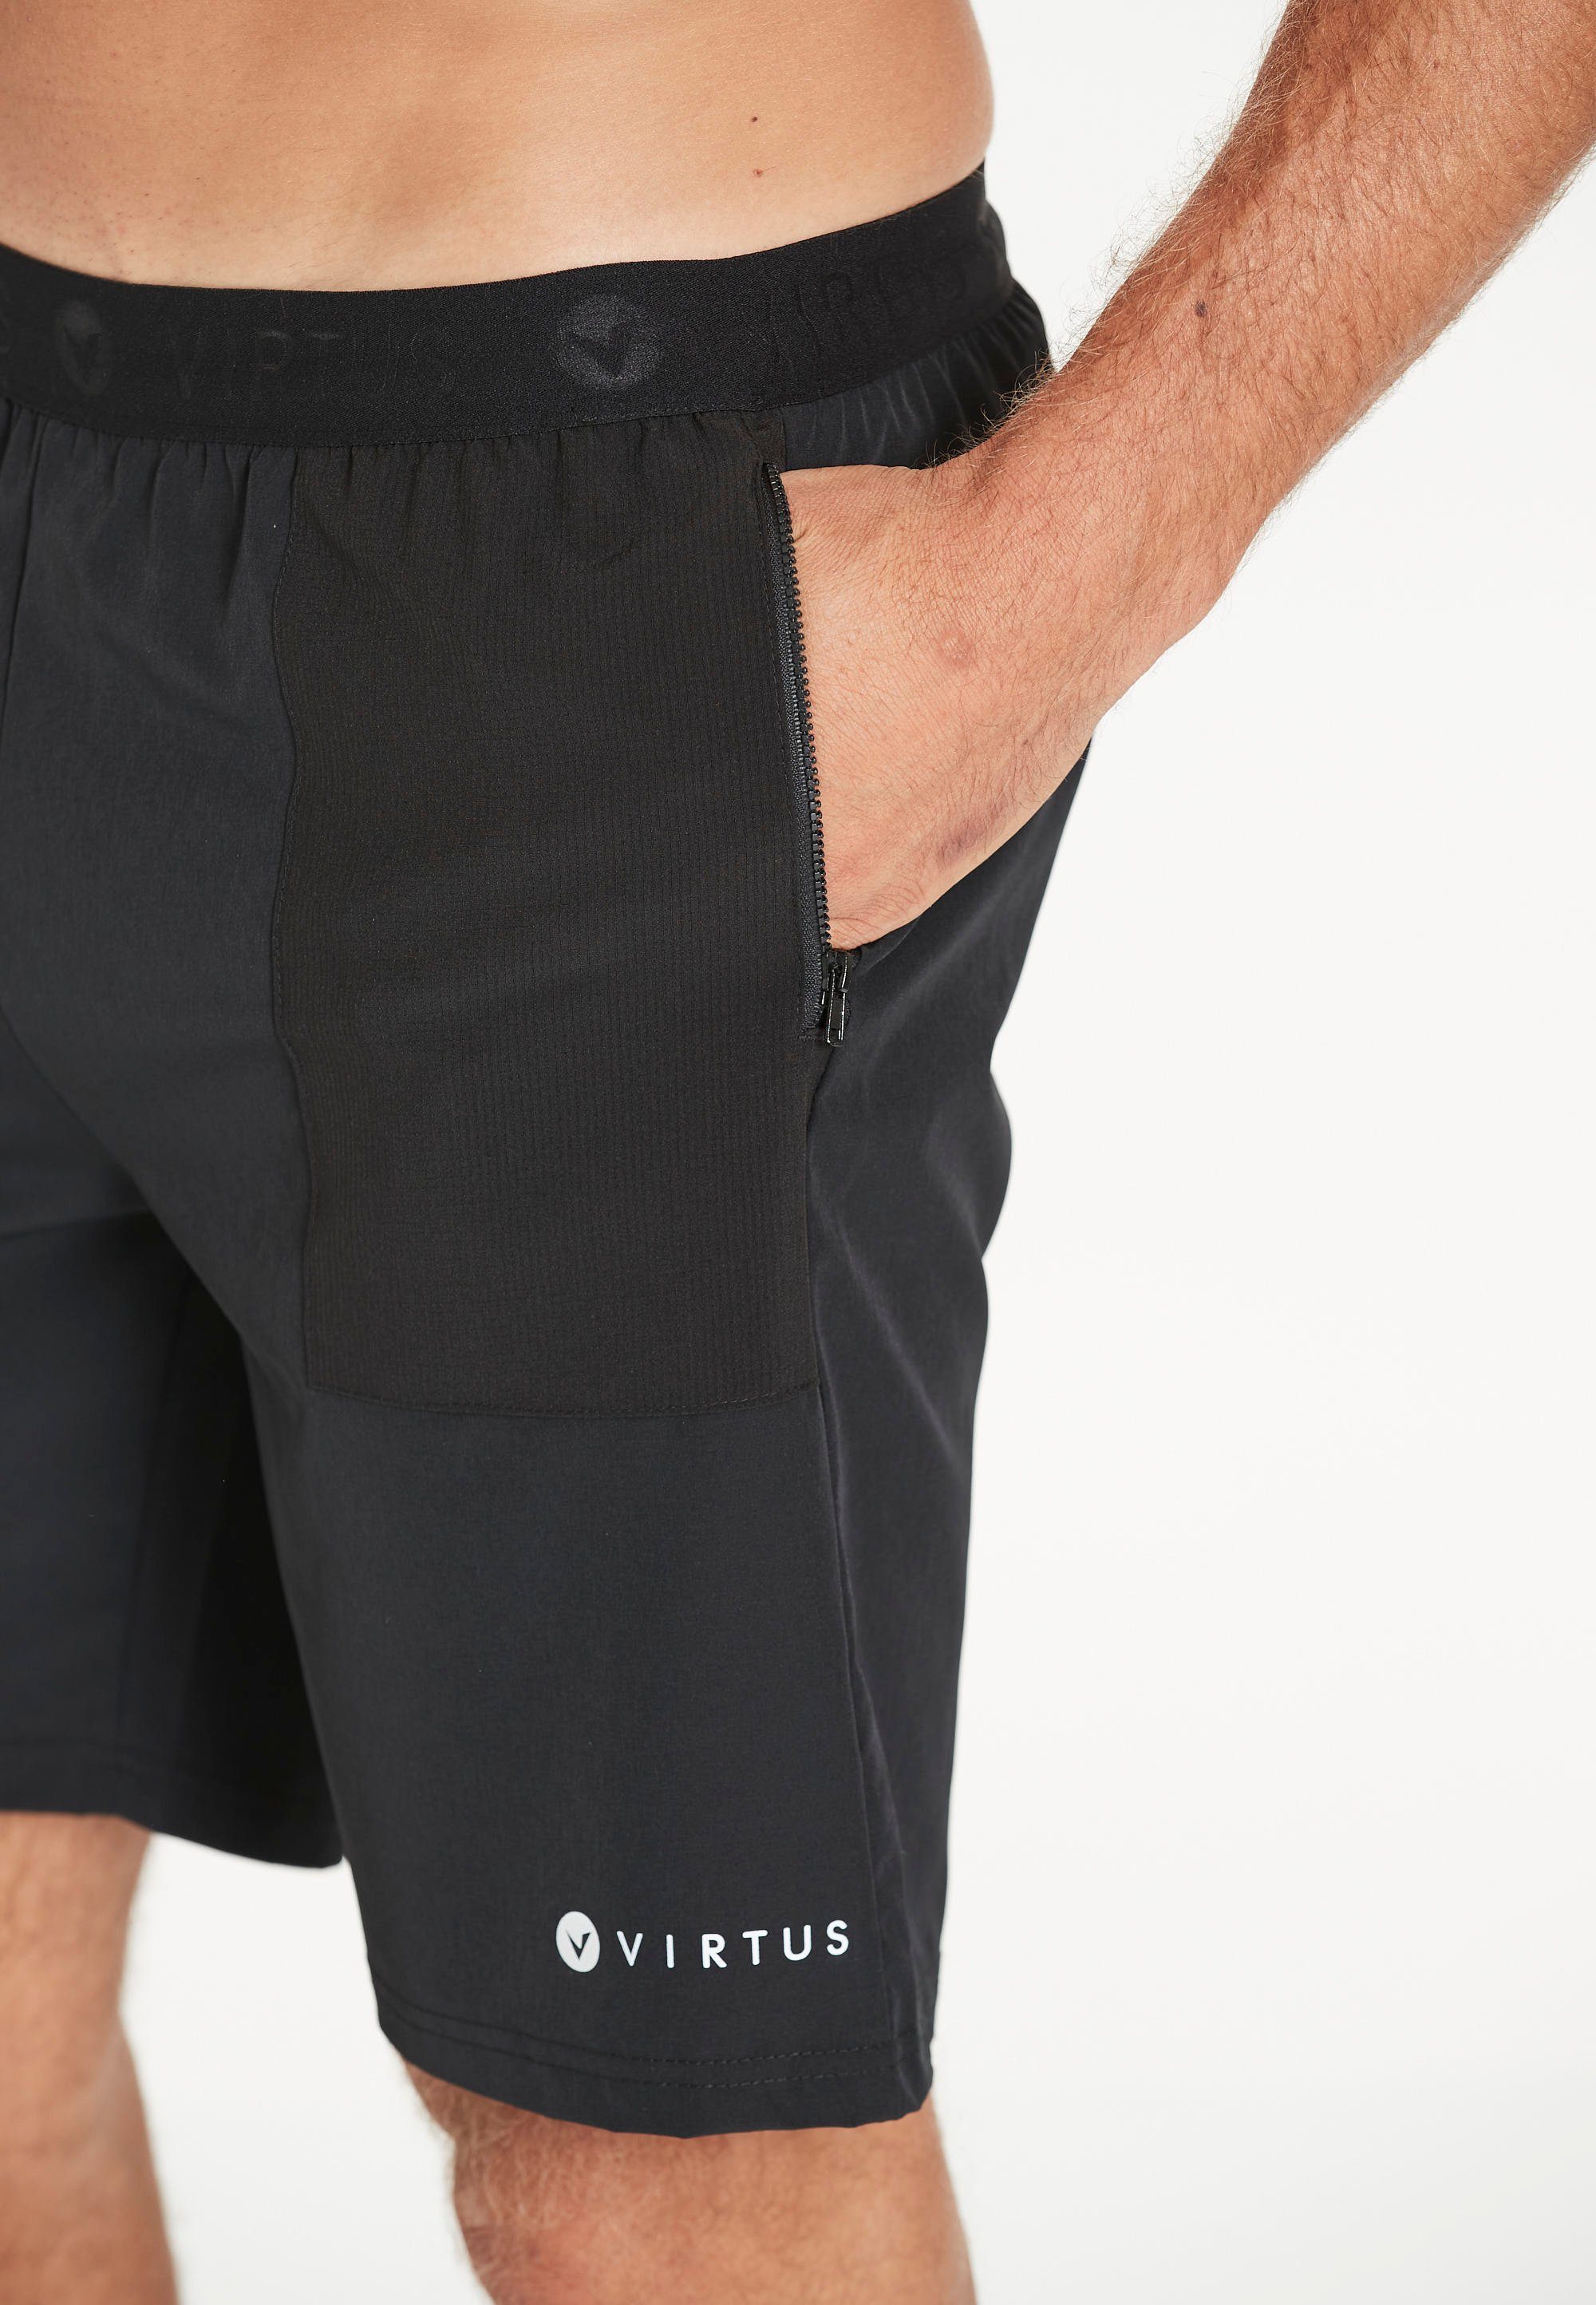 Taschen Virtus praktischen mit Store Shorts